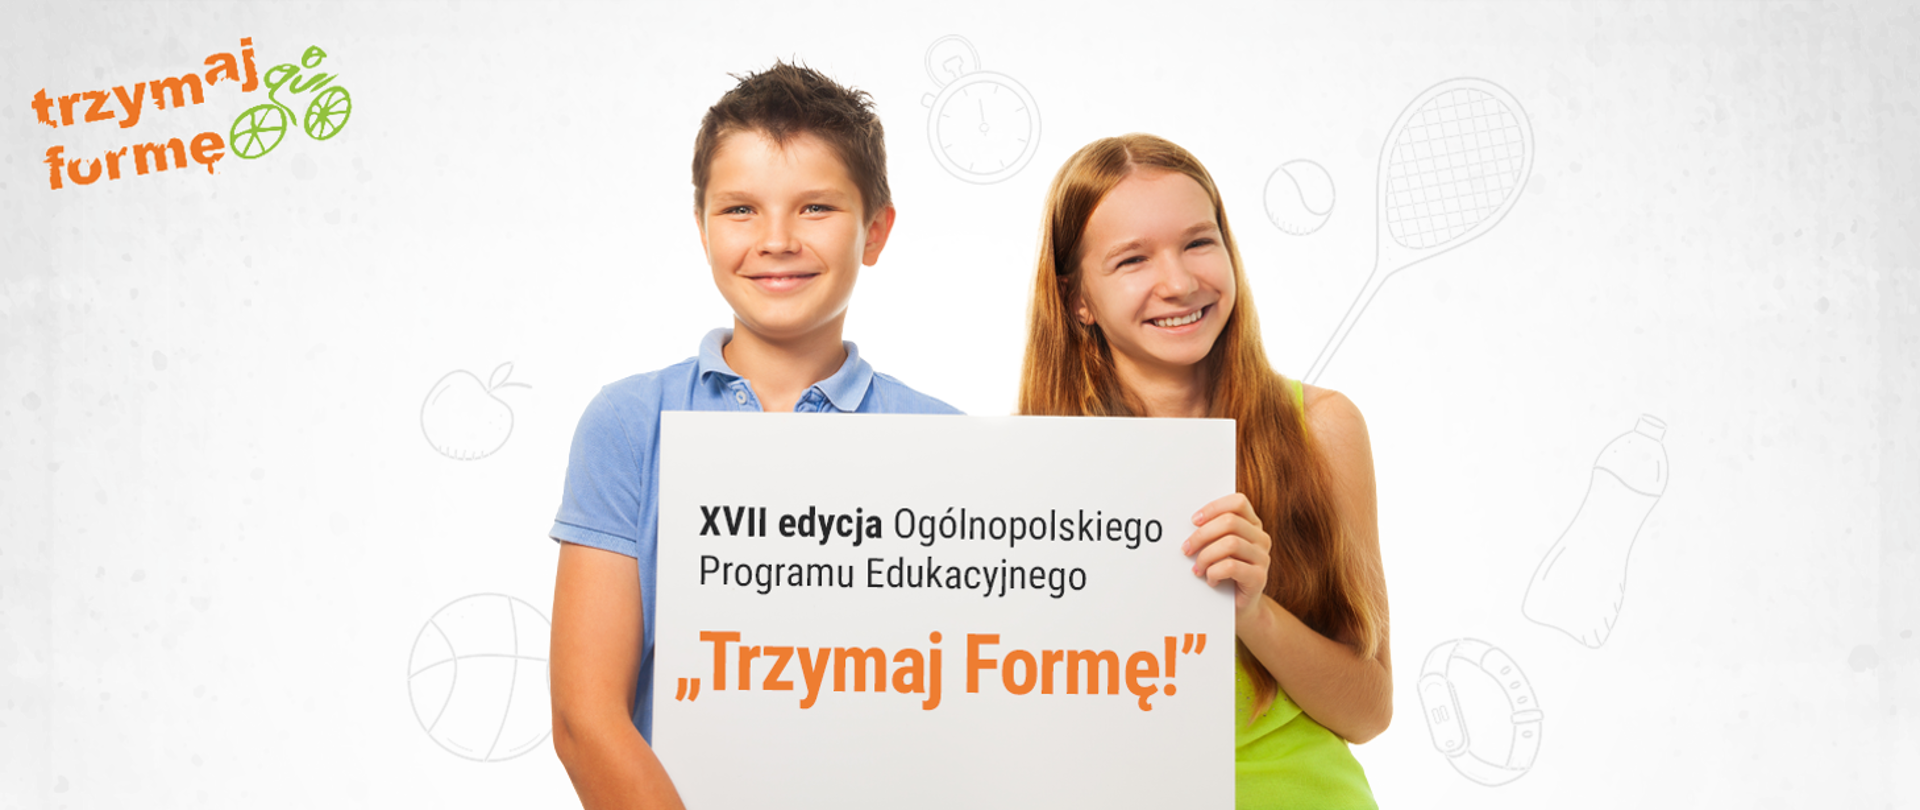 Dwoje młodych, uśmiechniętych ludzi trzyma tablicę z napisem XVII edycja Ogólnopolskiego Programu Edukacyjnego Trzymaj Formę